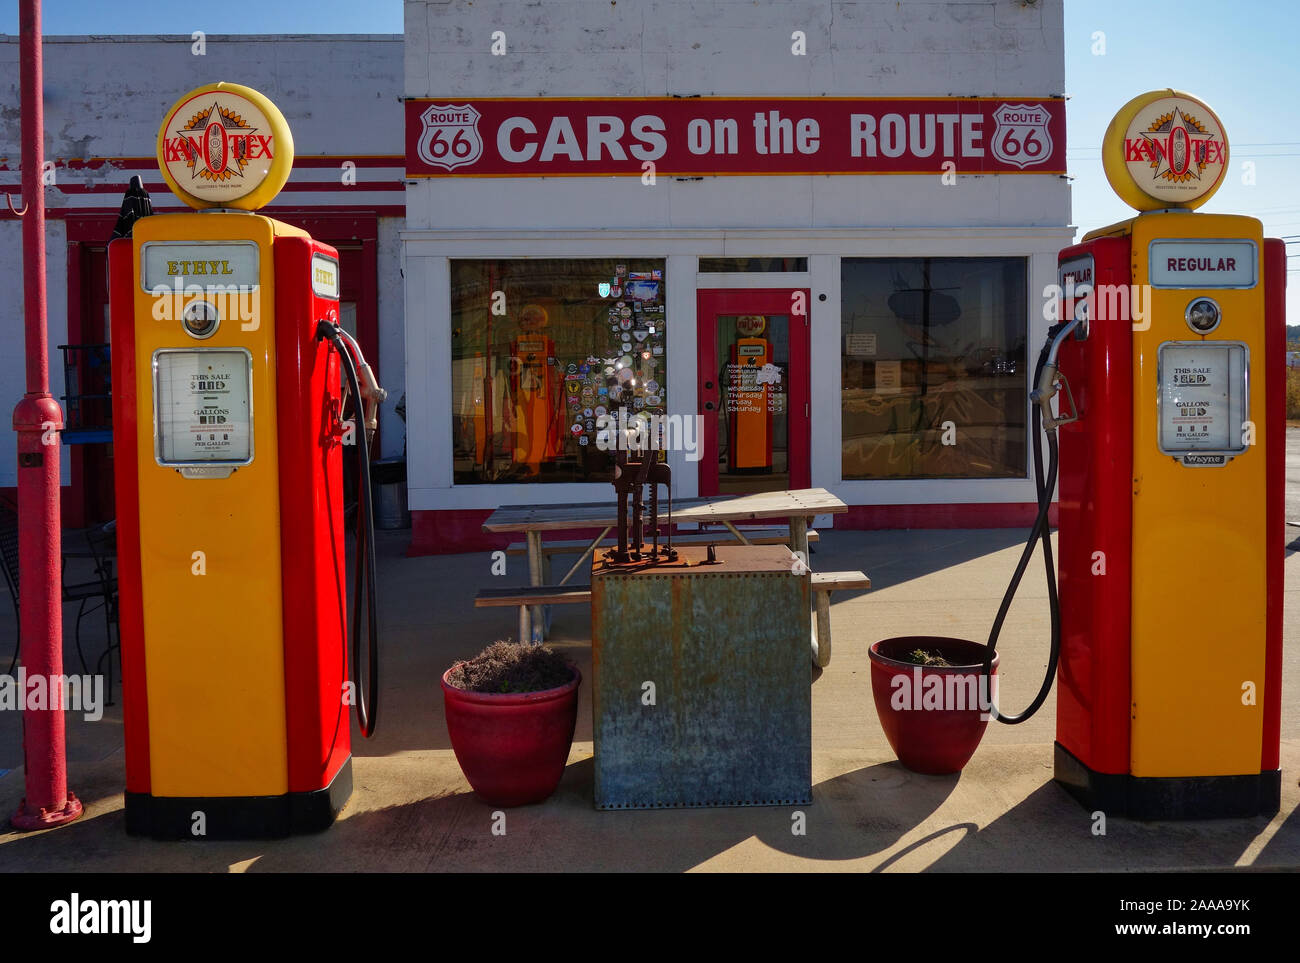 Coches en la ruta 66 en restaurado Kan-o-tex gasolinera en Galena, Kansas Foto de stock